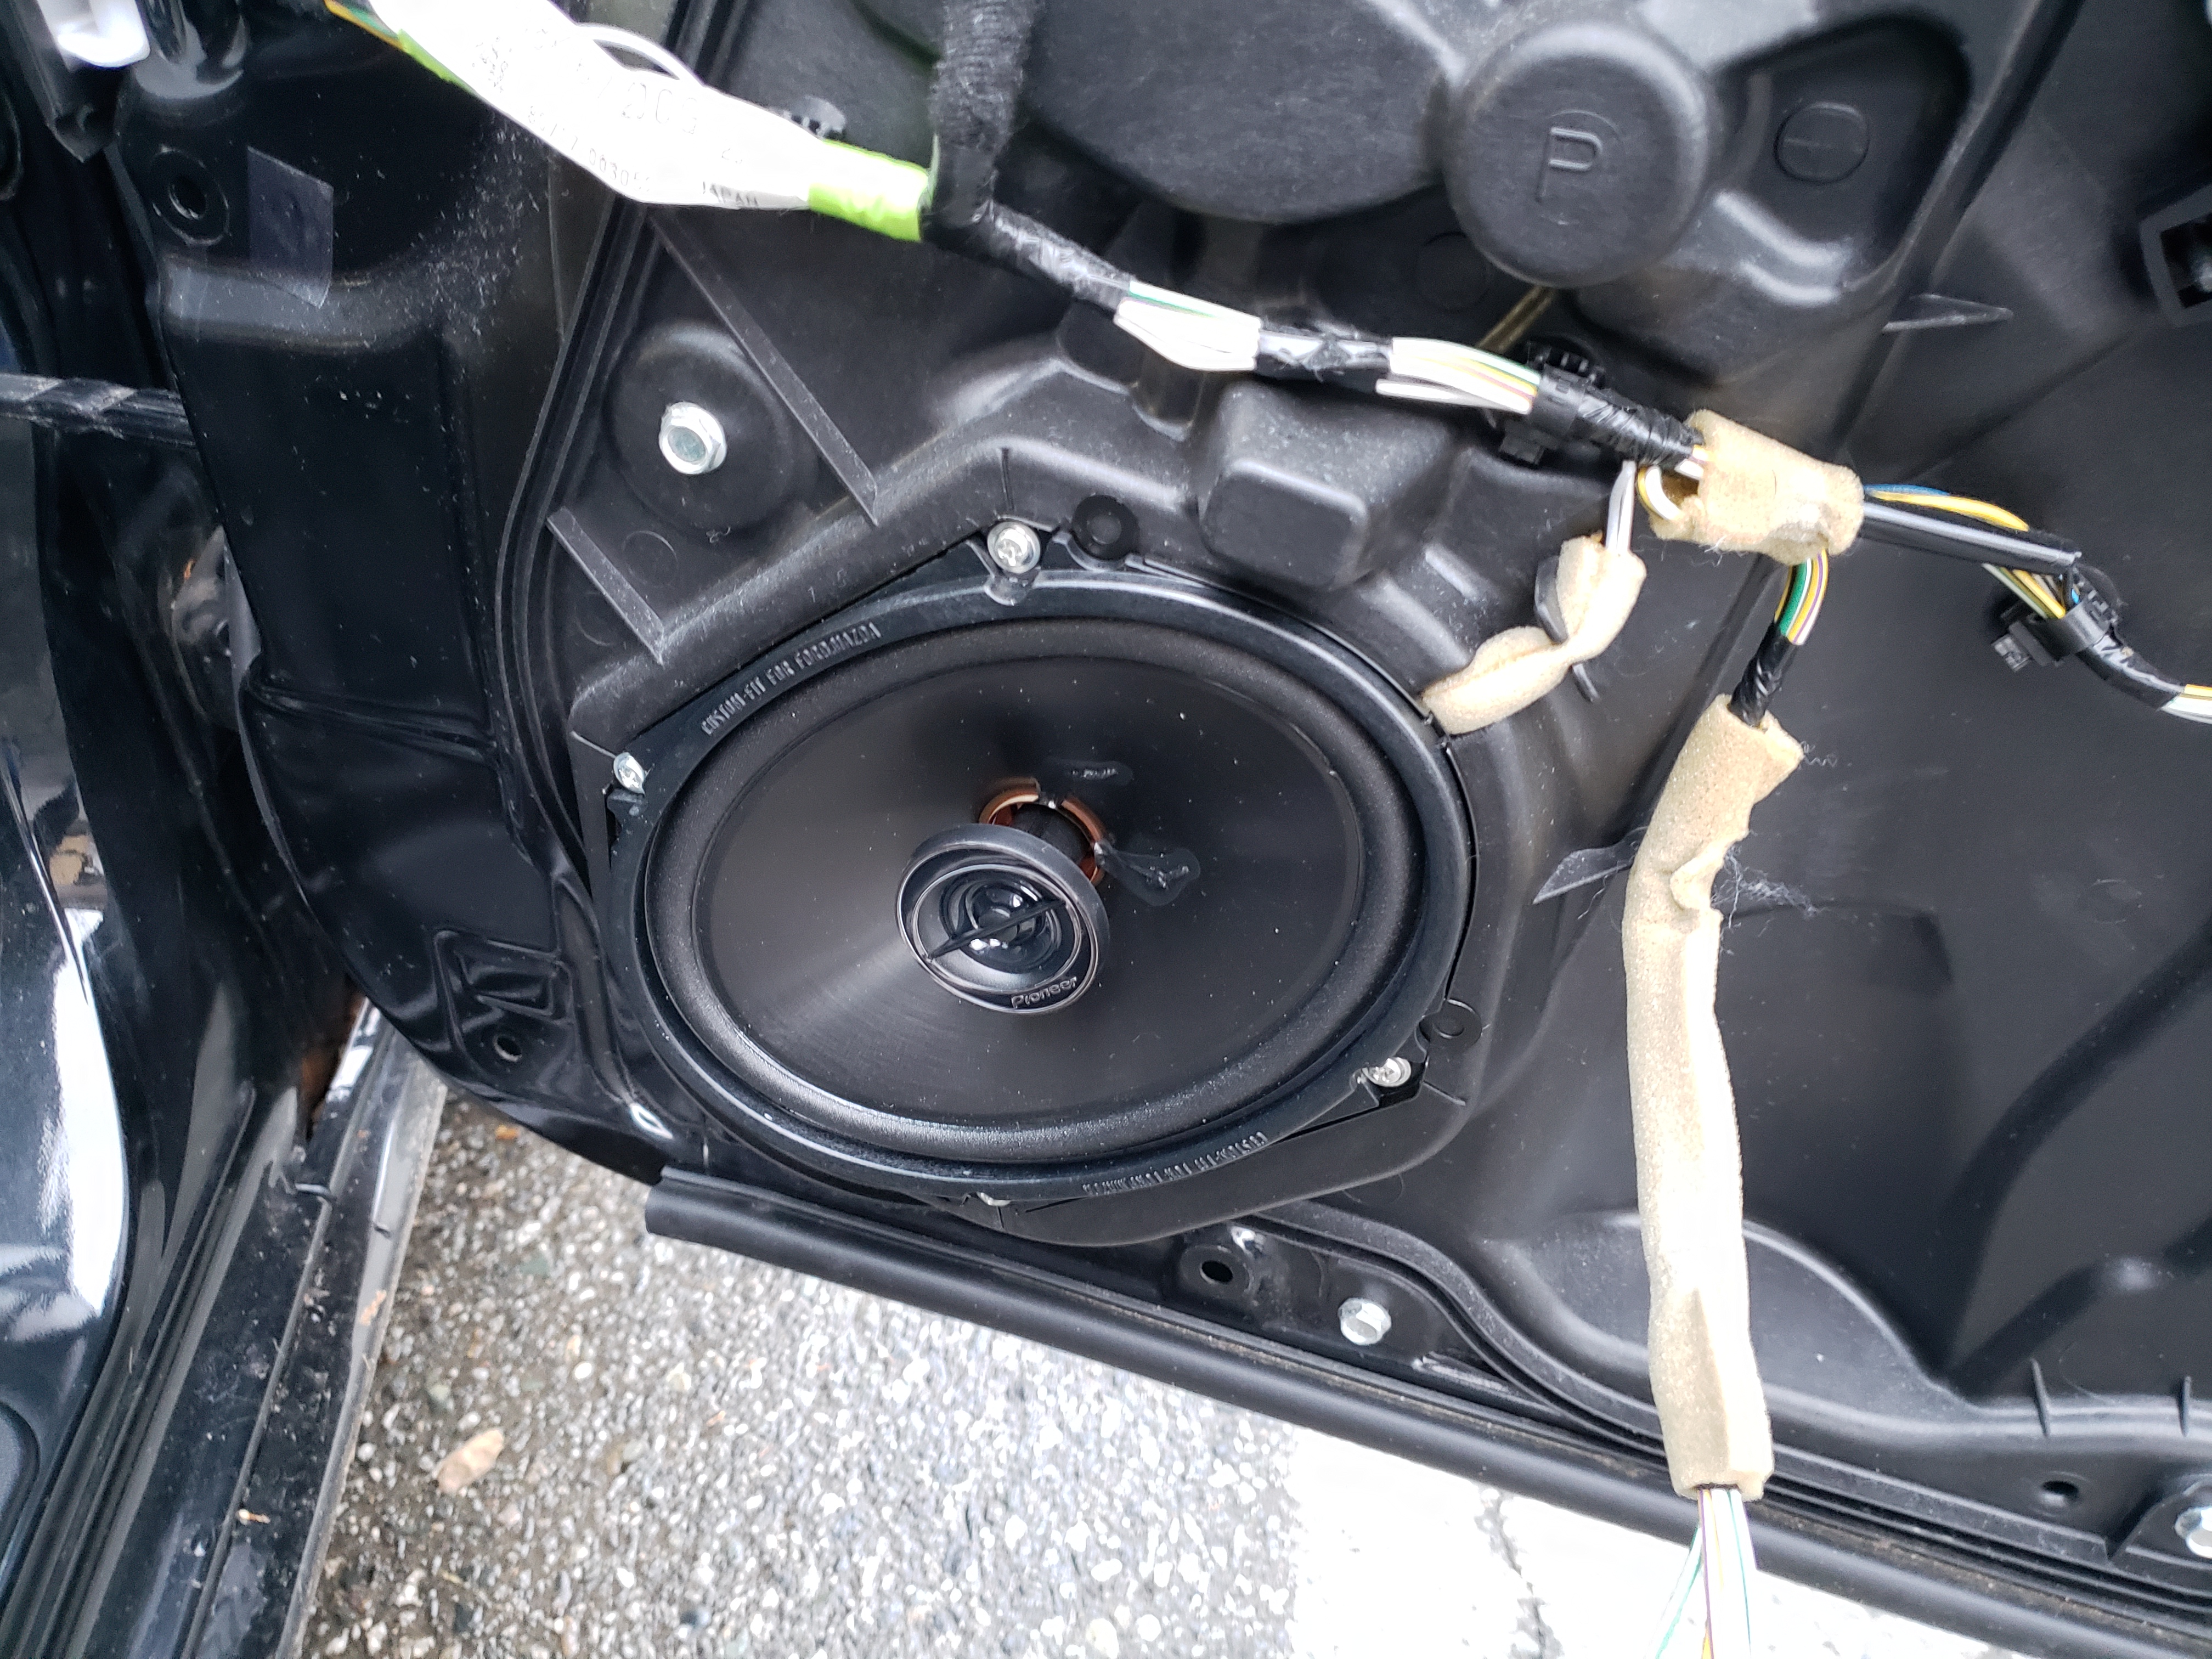 new speaker installed on the passenger side door